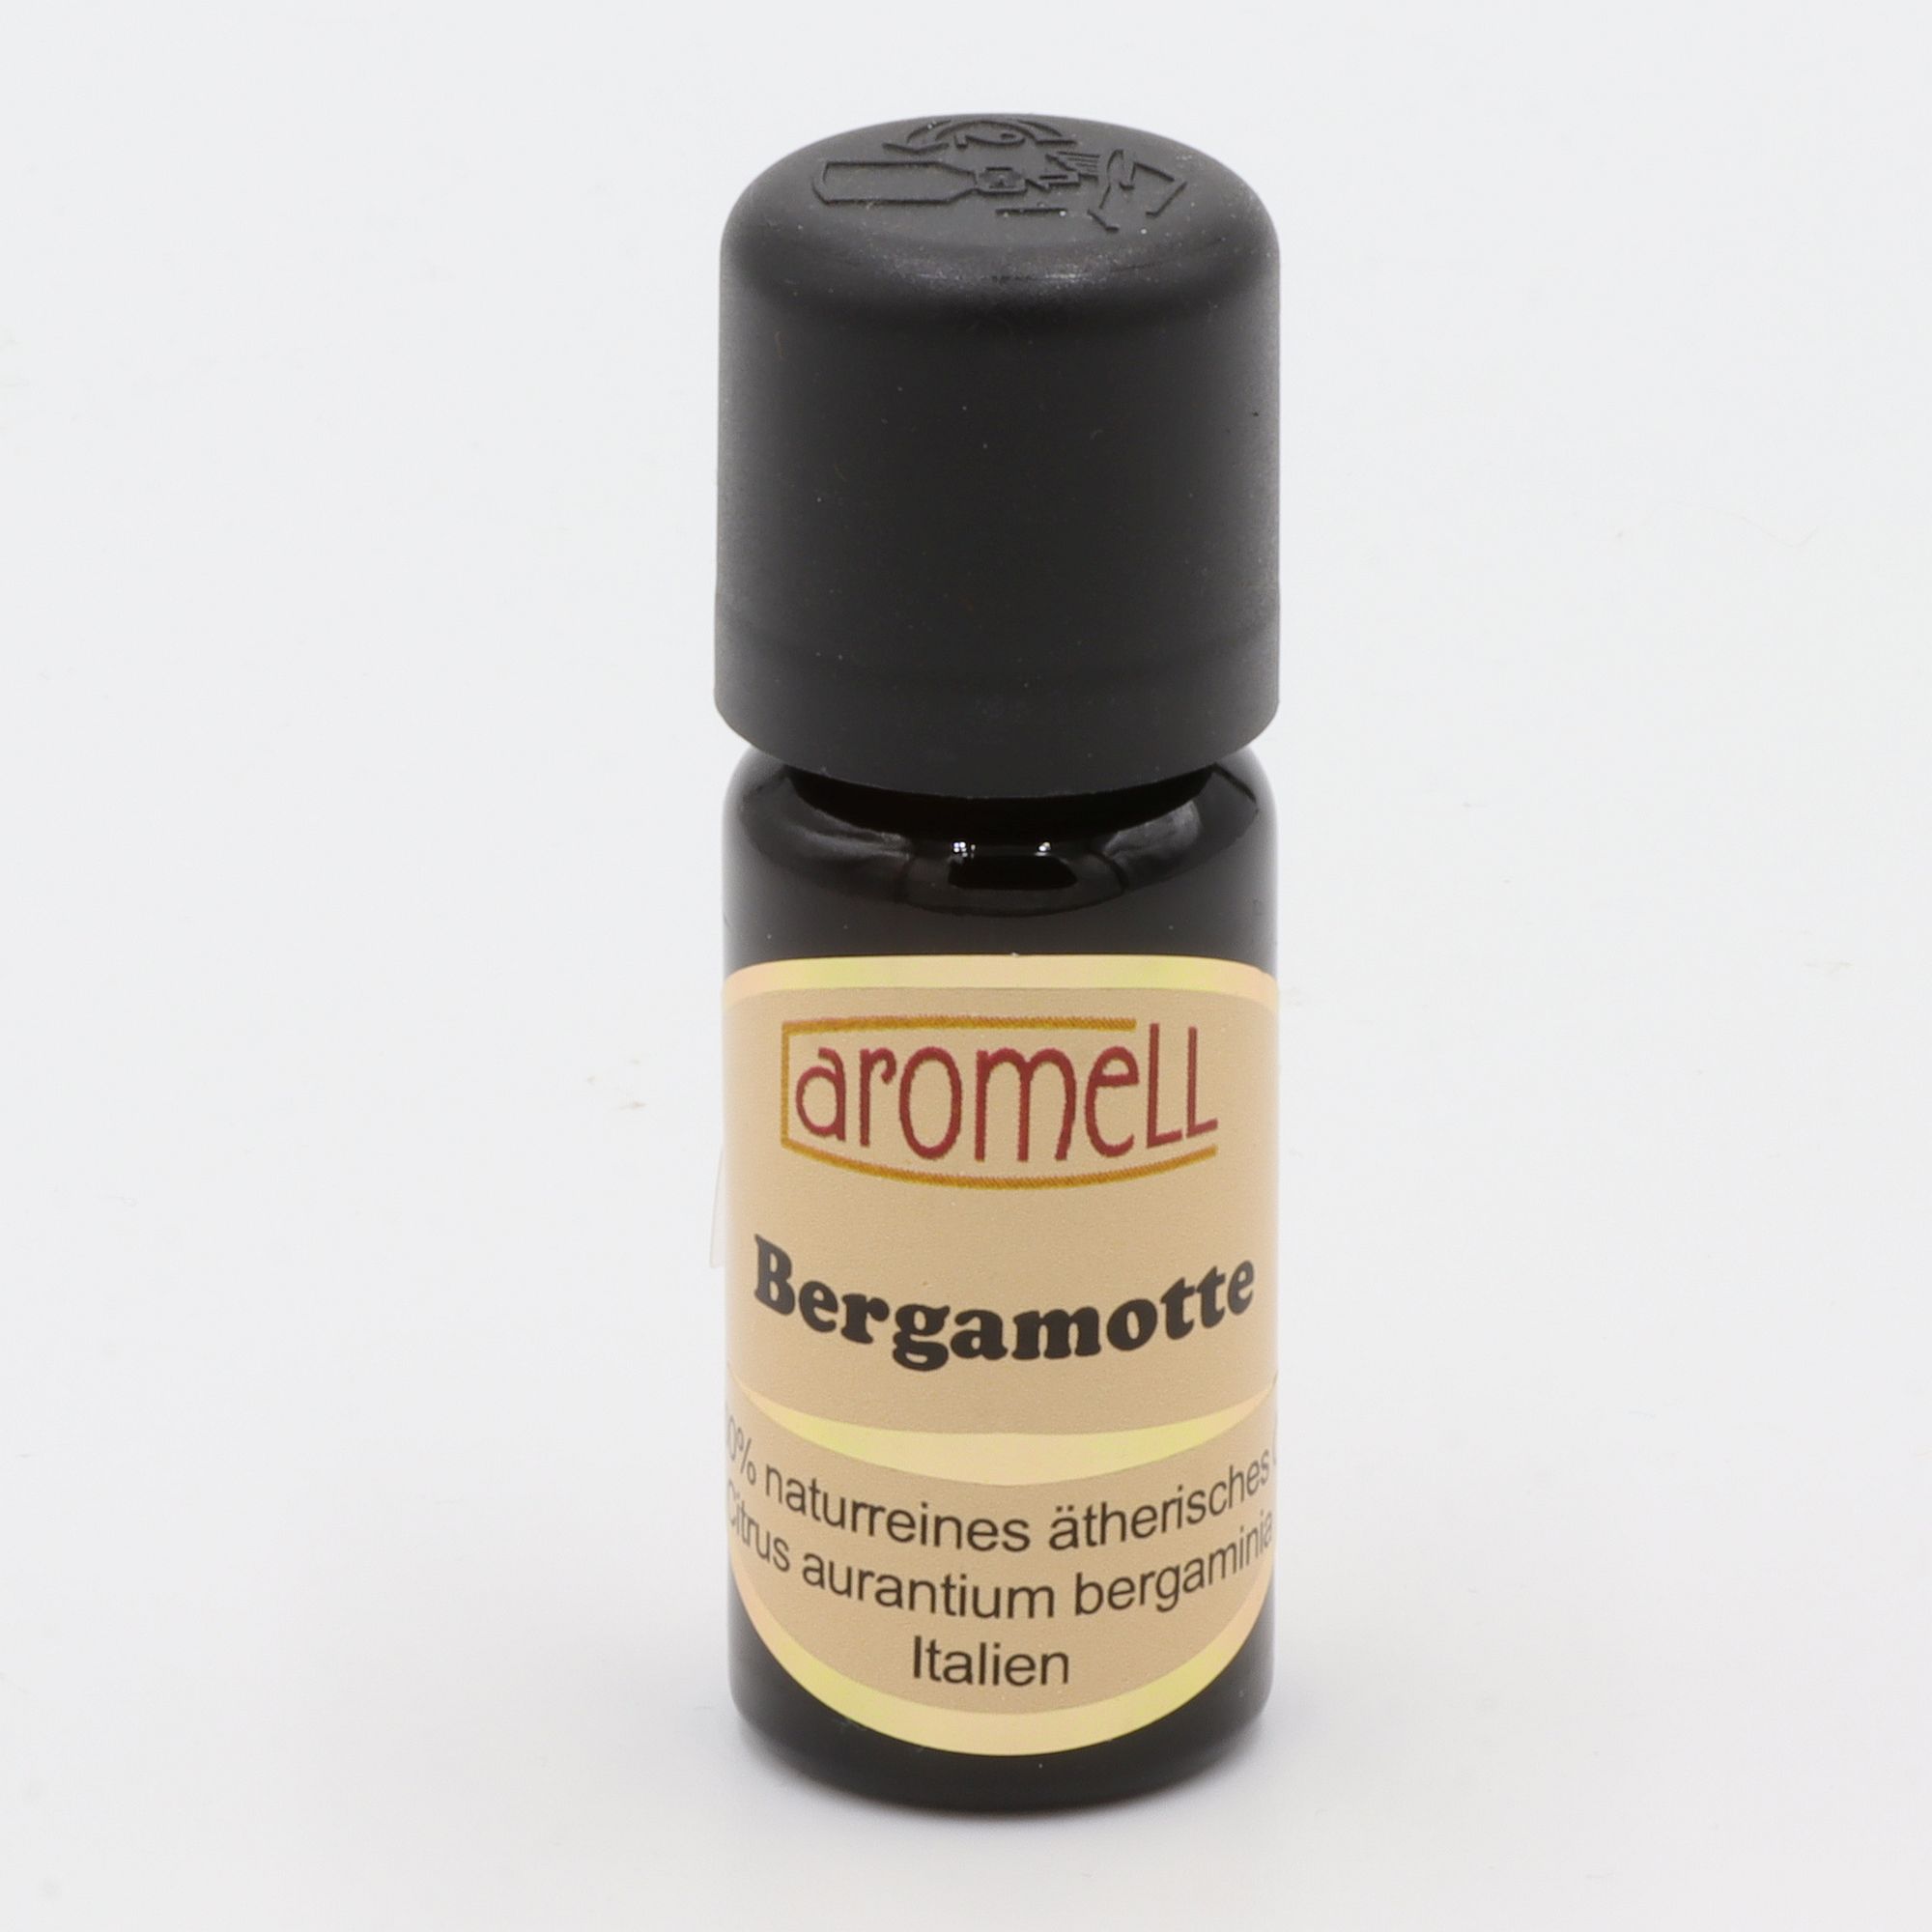 Ätherisches Öl - Aromell - Bergamotte - 100% naturrein - Citrus Aurantium Bergaminia aus Italien - aromatischer Raumduft für Dein Wohlbefinden - Glas mit Tropfendosierung